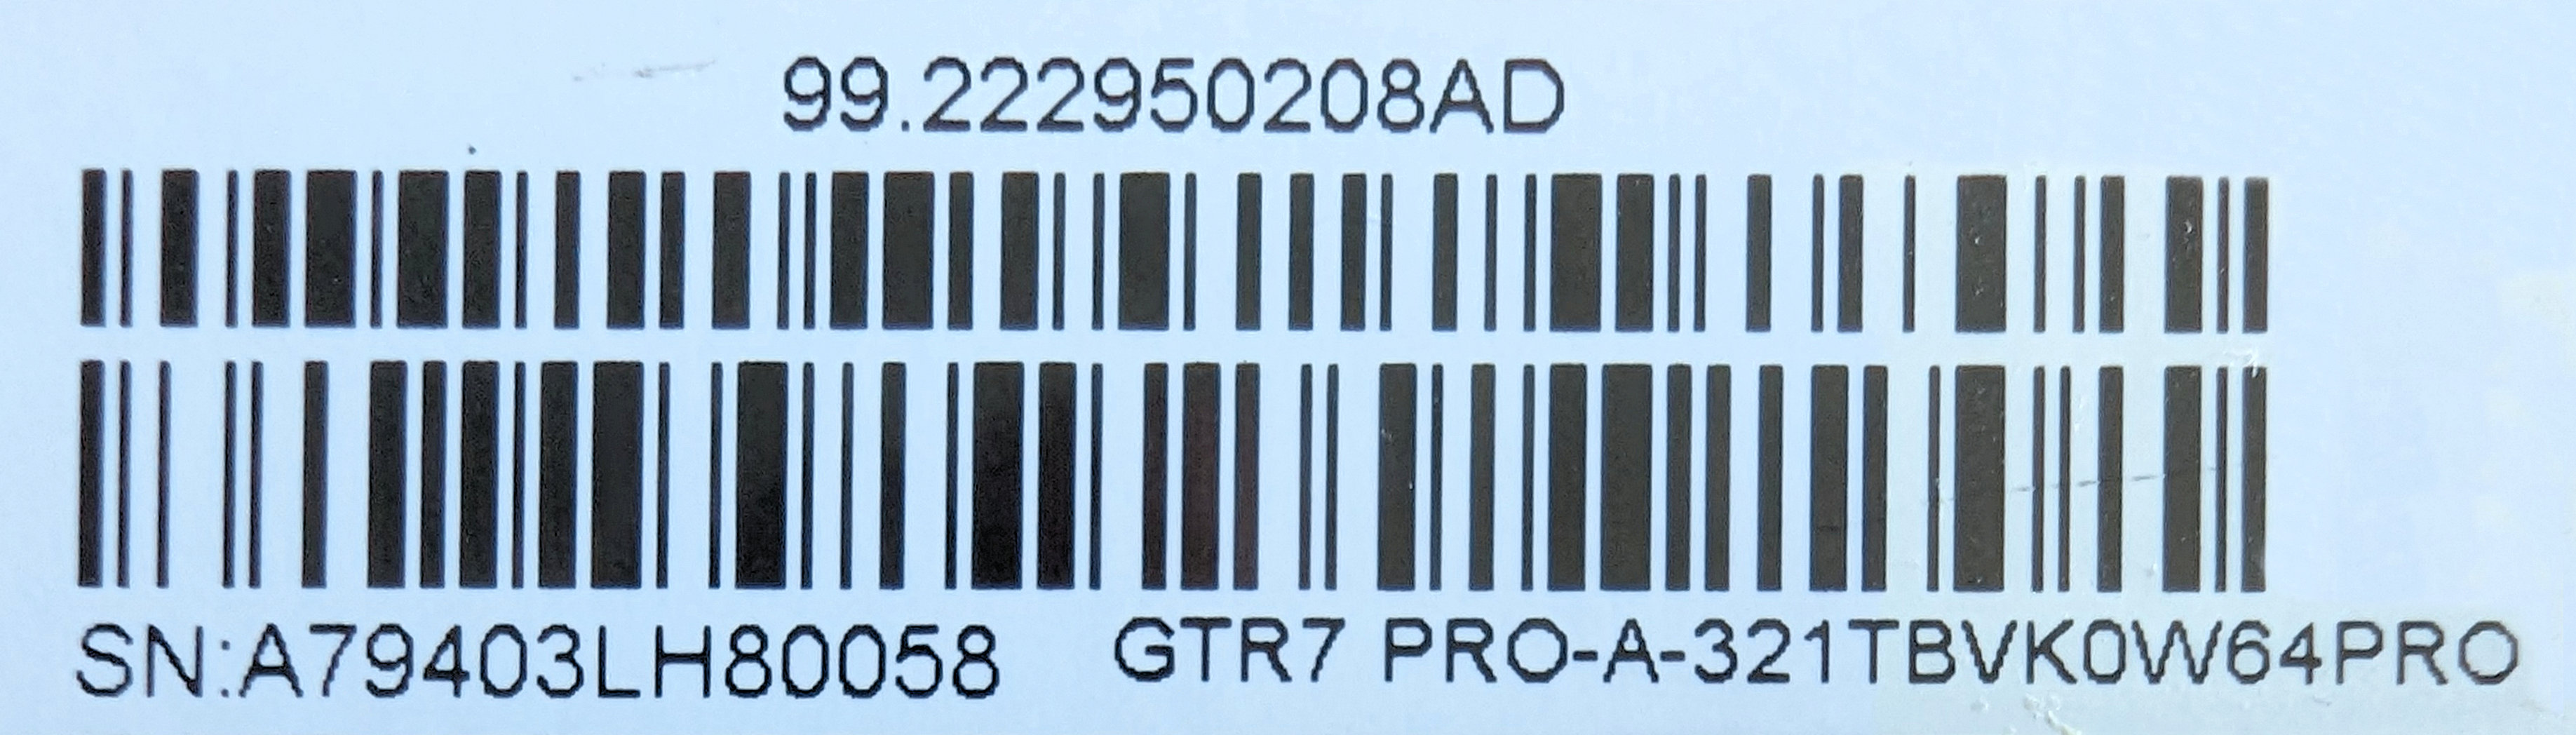 GTR7 Pro_Serial Number.jpg